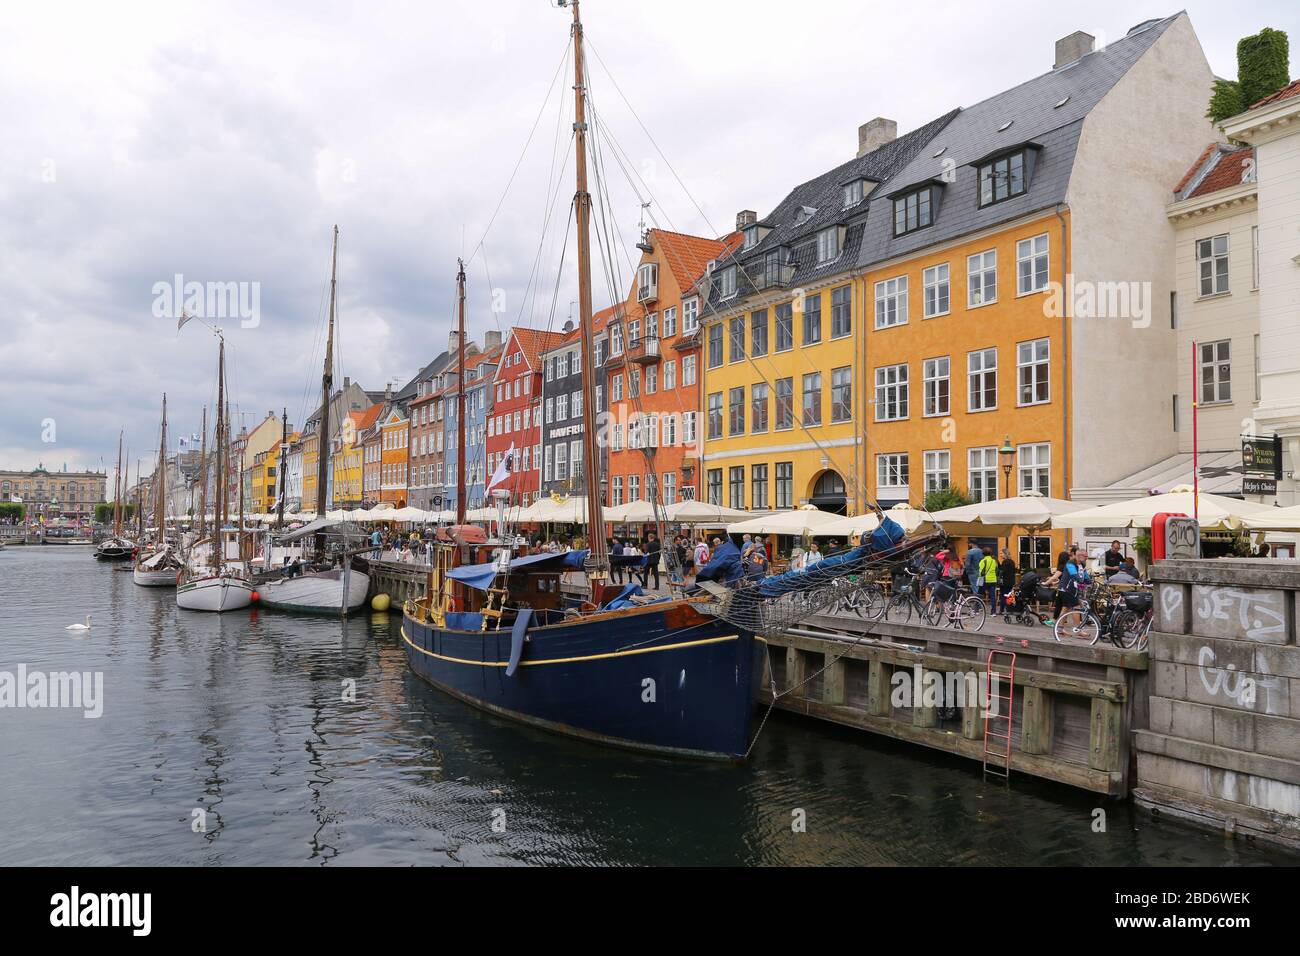 Nyhaven, Kopenhagen, Denmark Stock Photo